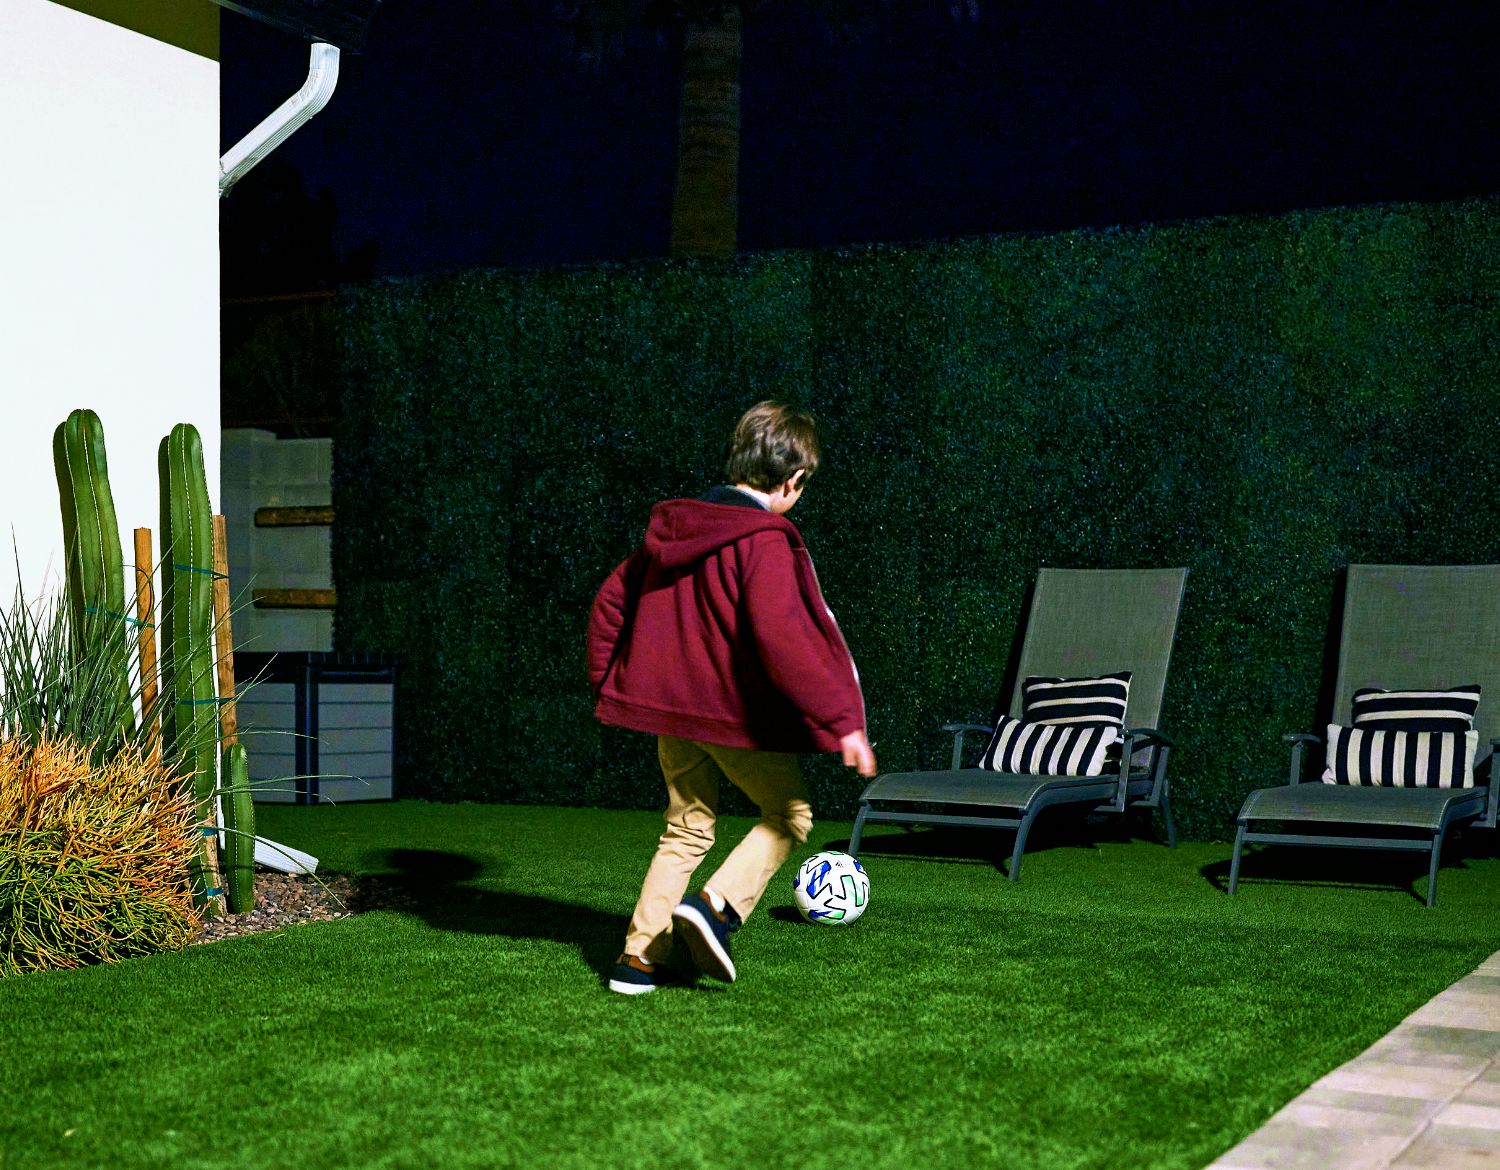 Et bilde viser en ung gutt som spiller fotball i hagen om natten, tatt av et Arlo Ultra 2 sikkerhetskamera